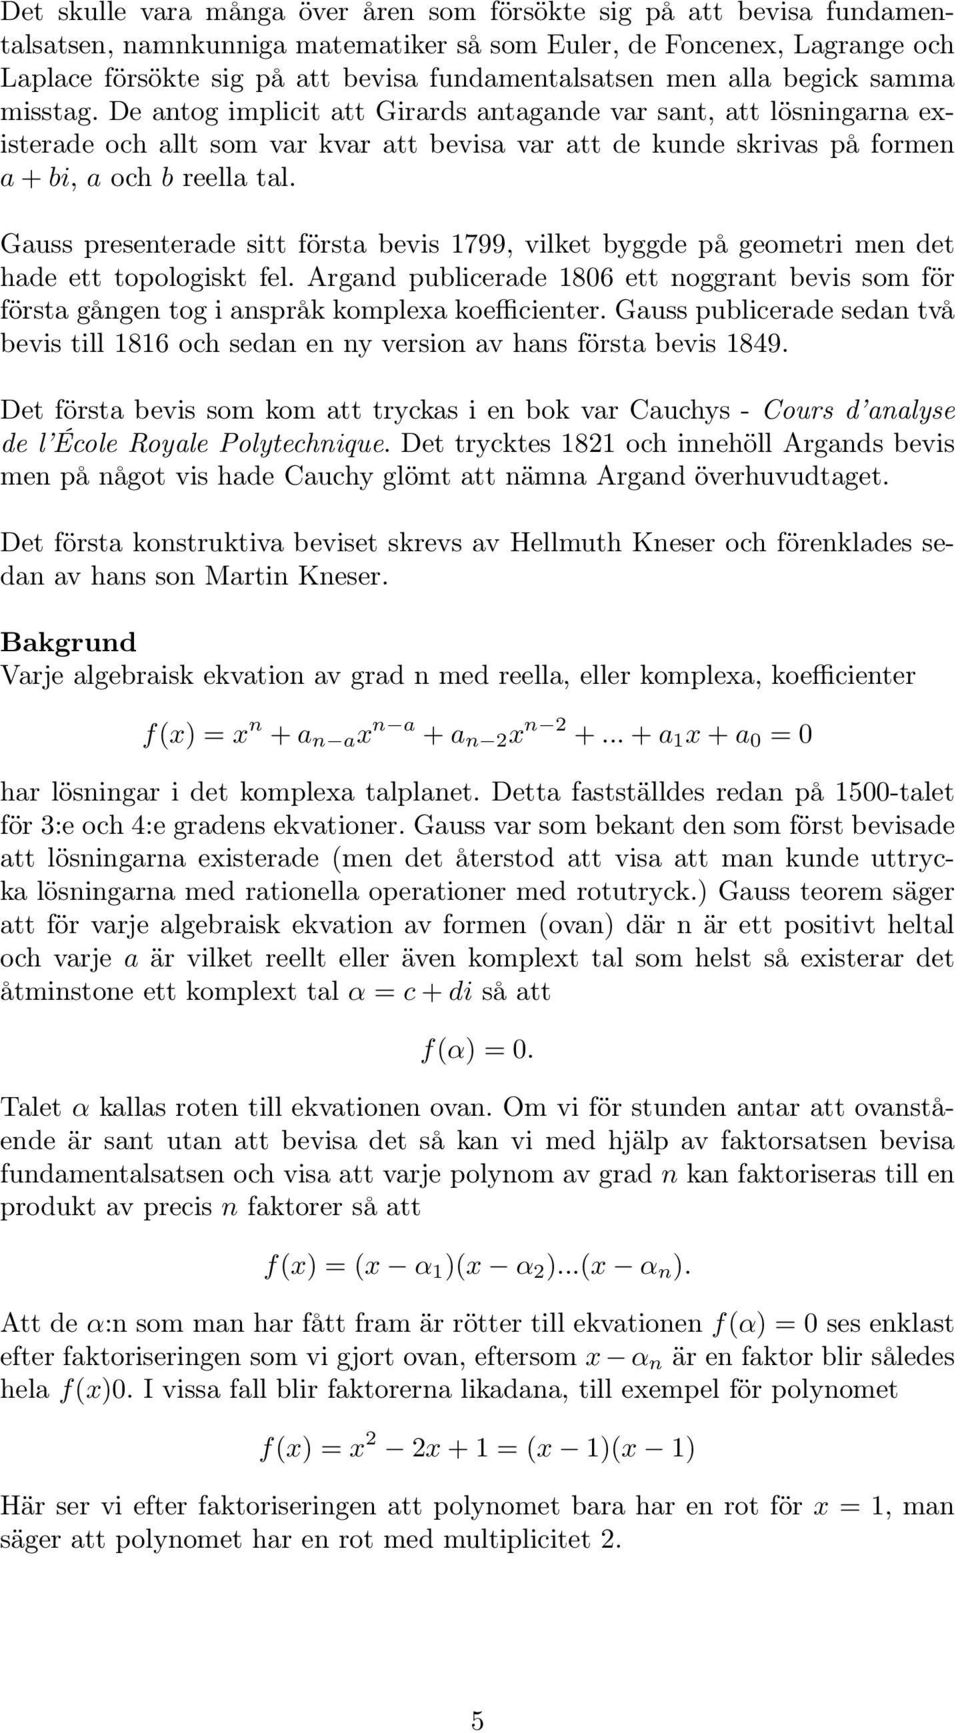 De antog implicit att Girards antagande var sant, att lösningarna existerade och allt som var kvar att bevisa var att de kunde skrivas på formen a + bi, a och b reella tal.